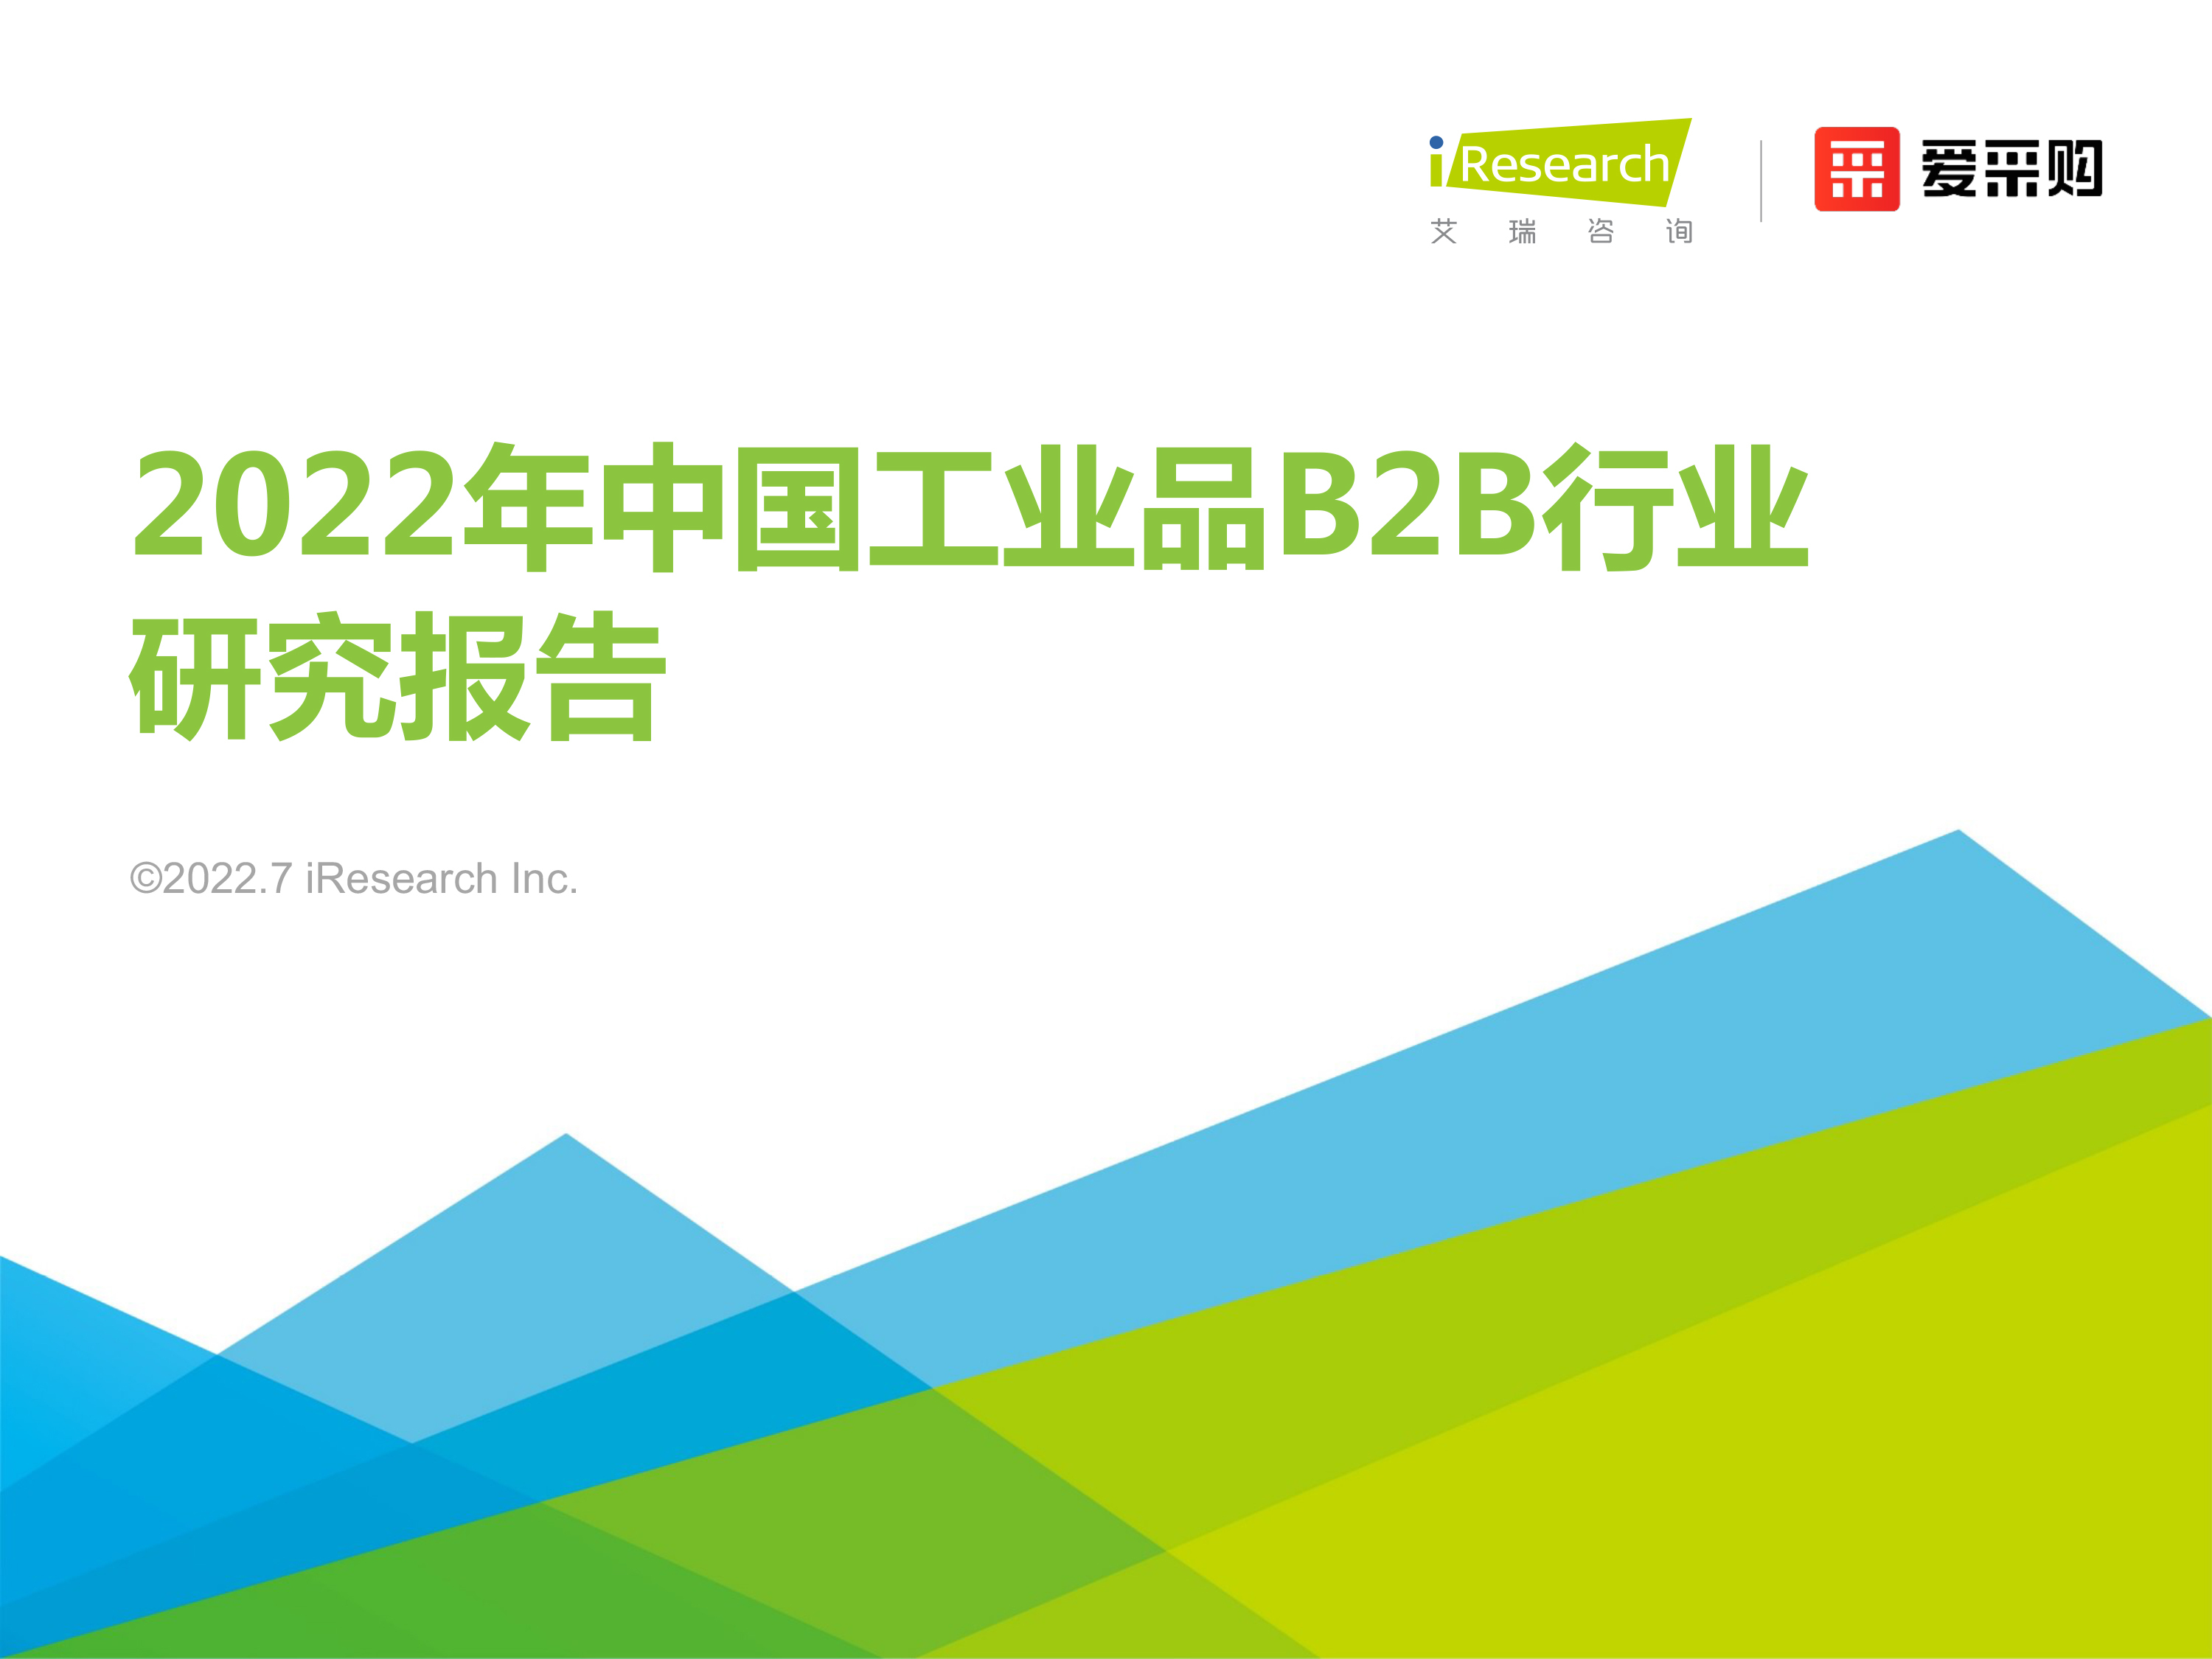 2022年中国工业品b2b行业研究报告